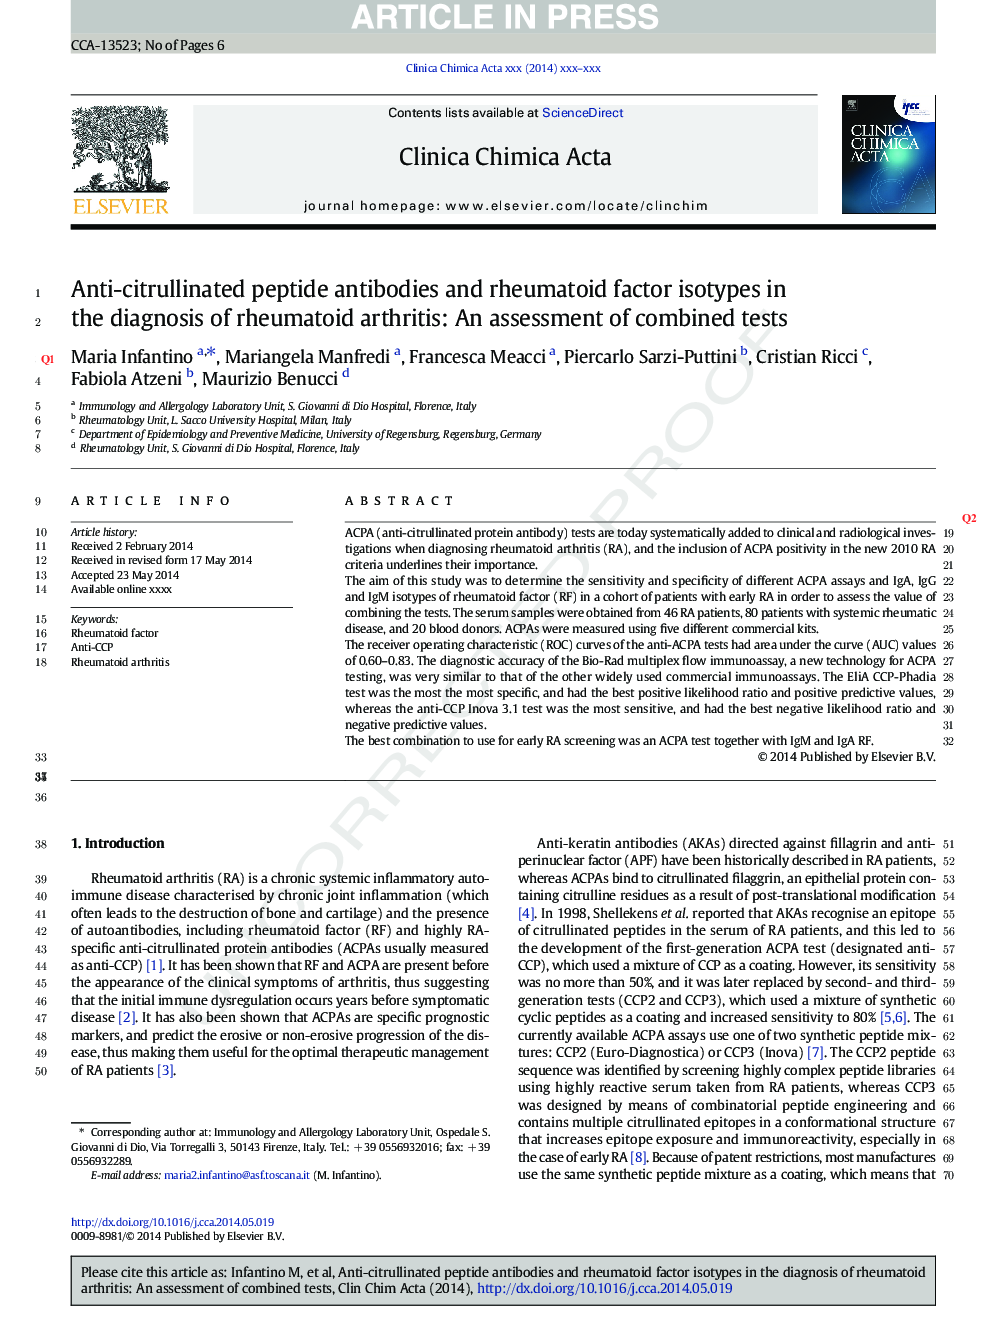 آنتی بادی های پپتید ضد سیترولینت و ایزوتایپ های فاکتور روماتوئید در تشخیص آرتریت روماتوئید: ارزیابی آزمایش های ترکیبی 